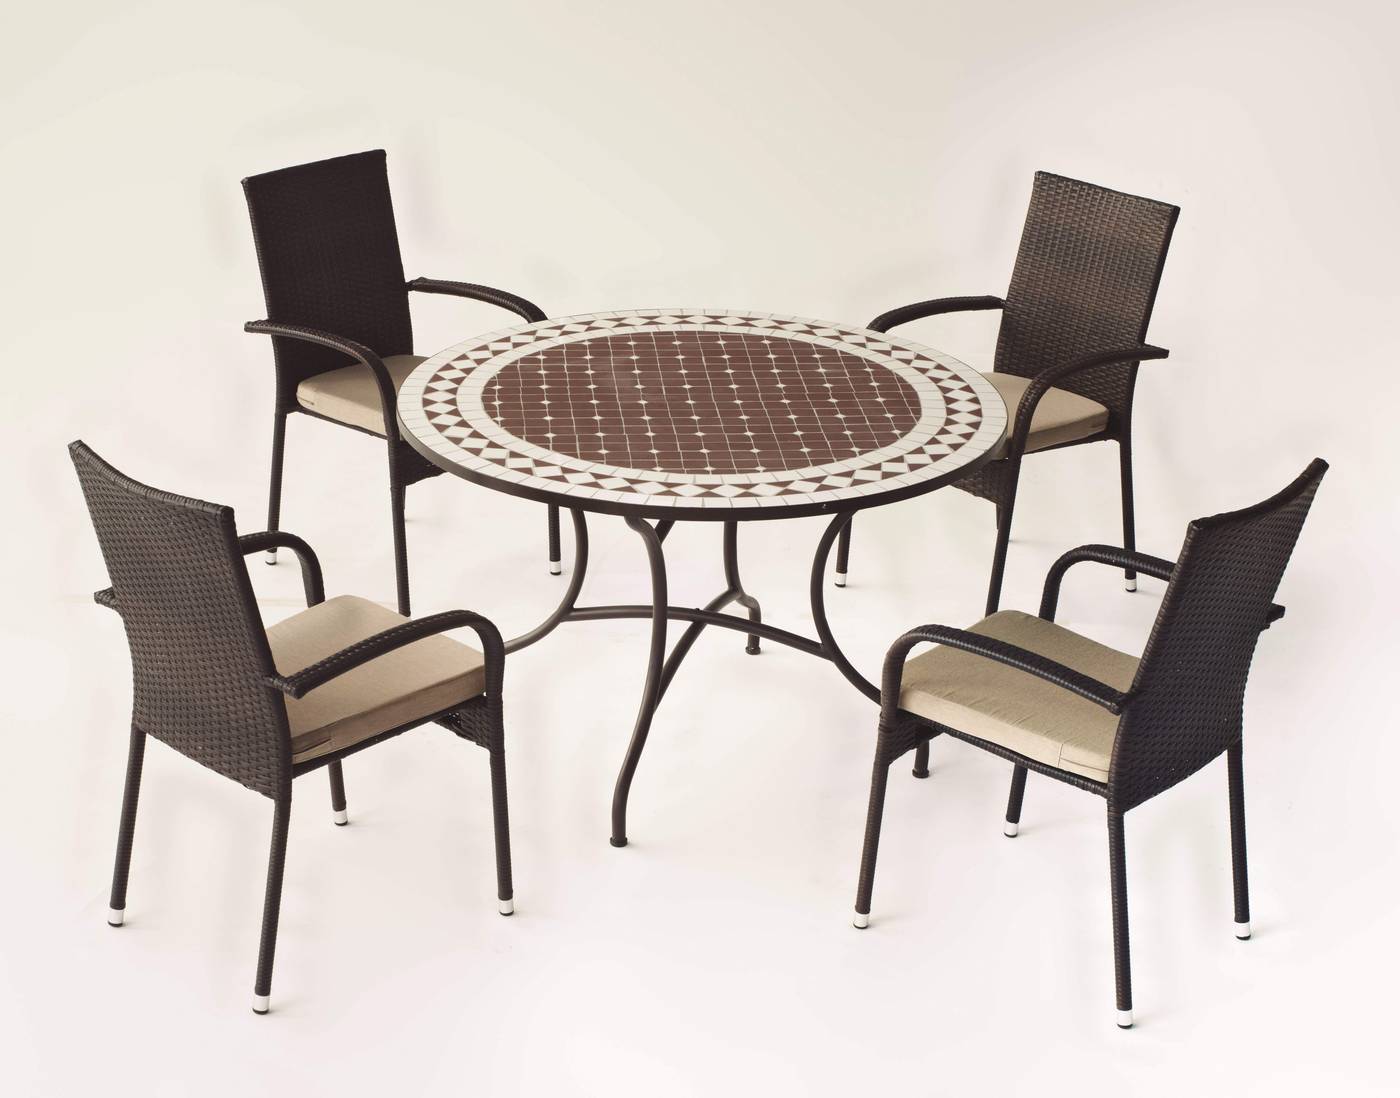 Conjunto Mosaico Alondra120-Bergamo - Conjunto de forja color marrón: mesa con tablero mosaico de 120 cm + 4 sillones de ratán sintético con cojines.